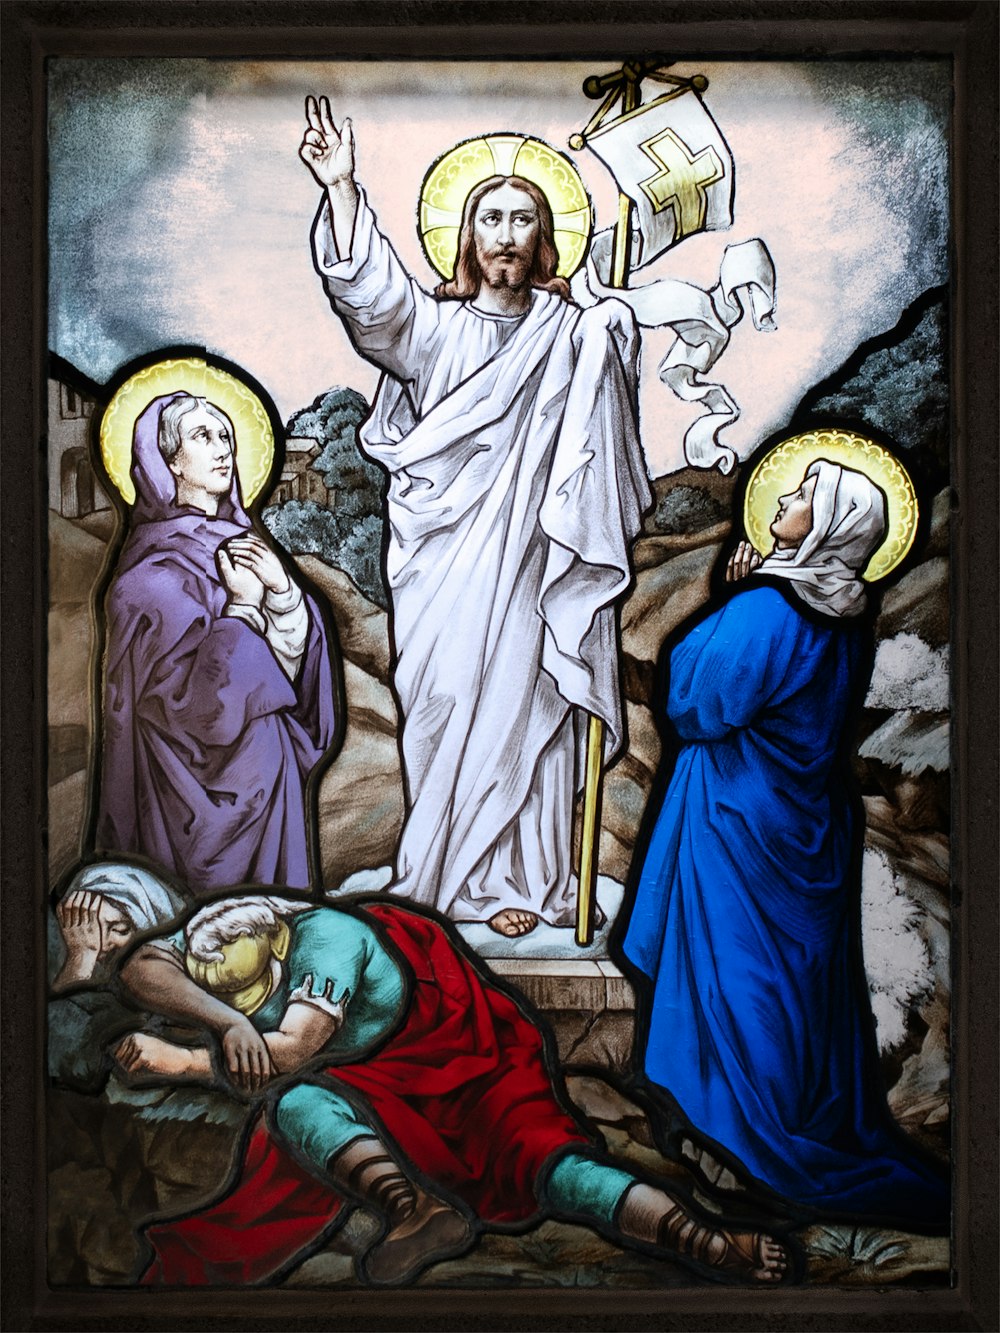 ein Buntglasfenster, das Jesus und andere Menschen darstellt